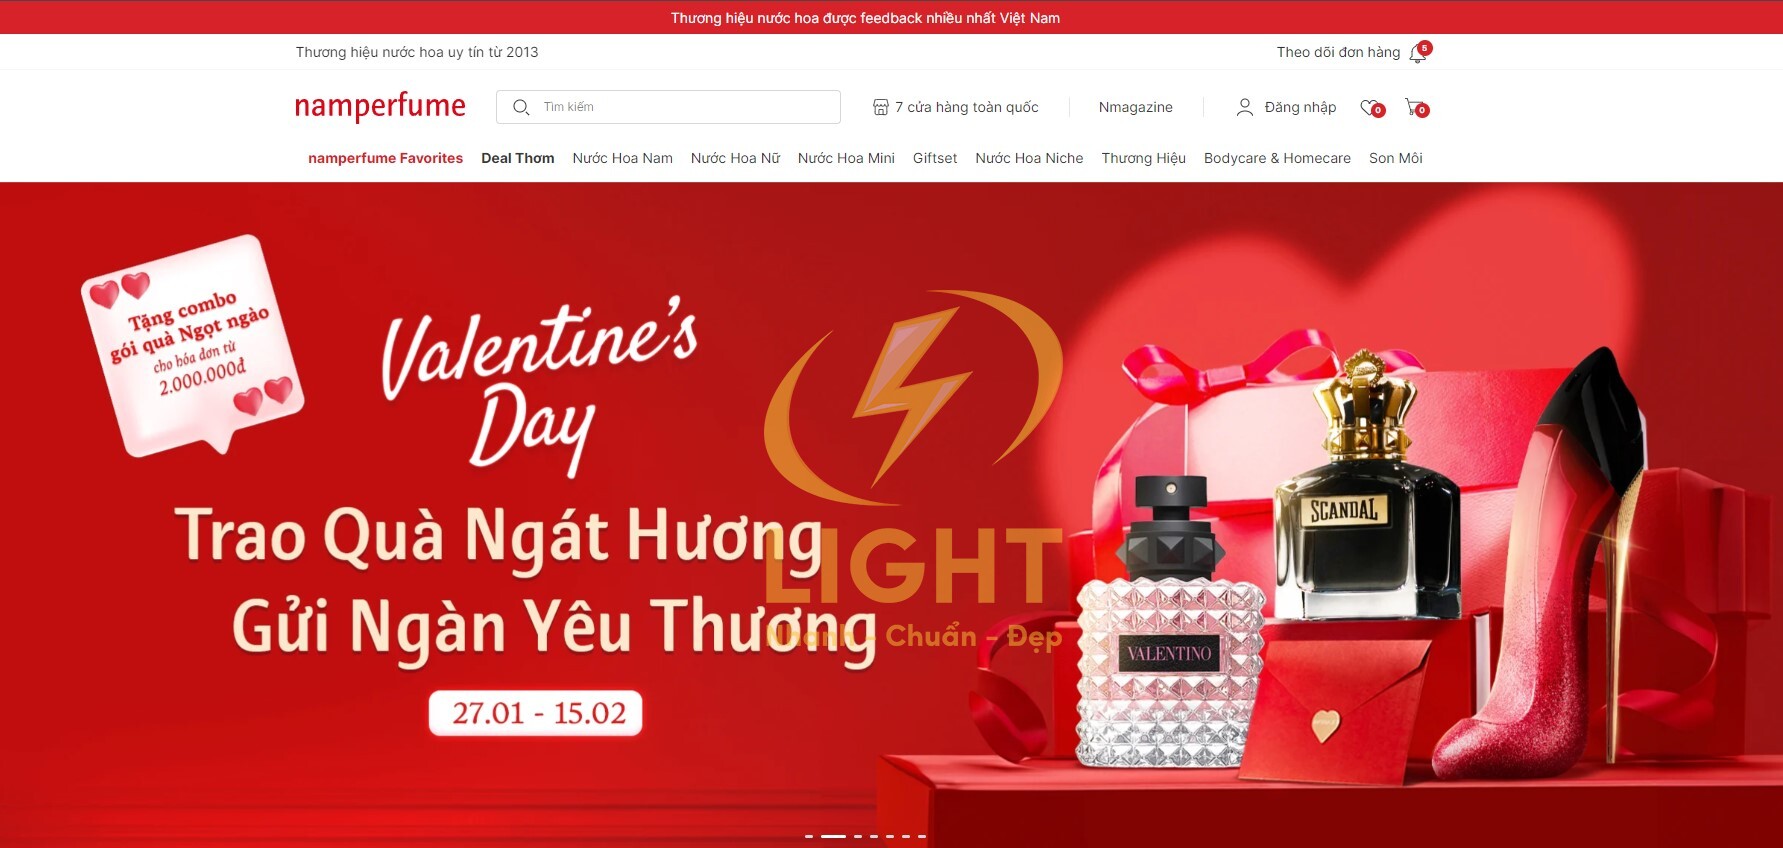 Giao diện website bán nước hoa của Namperfume